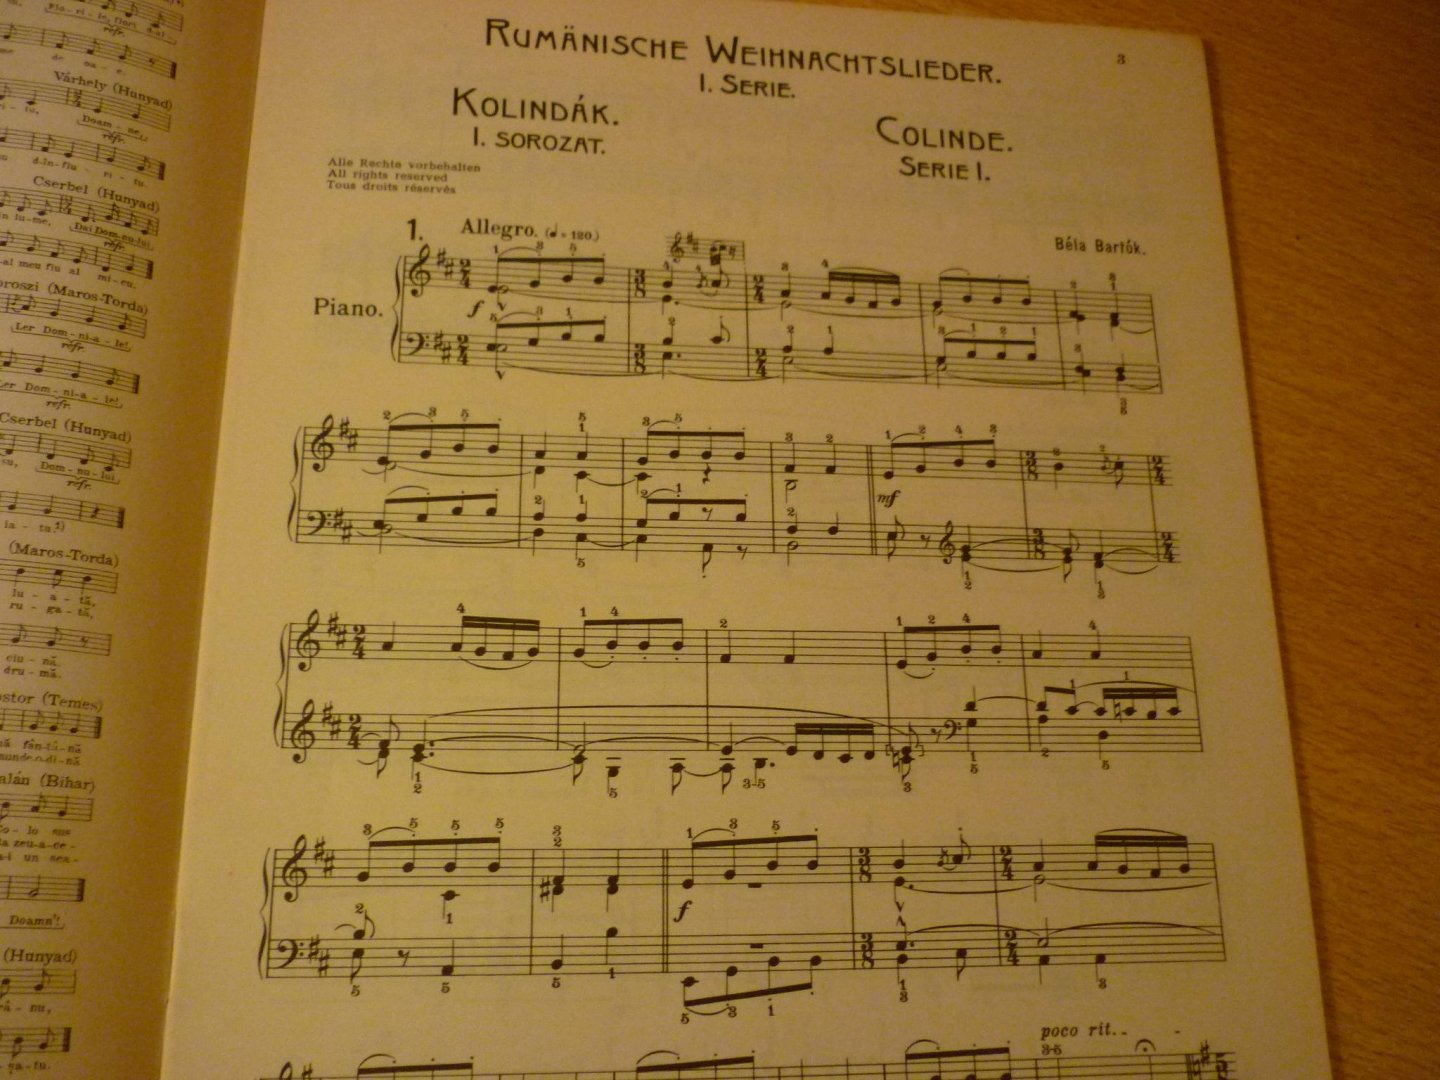 Bartók; Béla Rumänische Weihnachtslieder - Rumänische Weihnachtslieder; Roman Kolinda-Dallamok/ Melodii de Colinde/ Rumanian Christmas Carols - Piano Solo. Für Klavier mit zwei Händen (ohne Oktavenspannung) gesetzt.